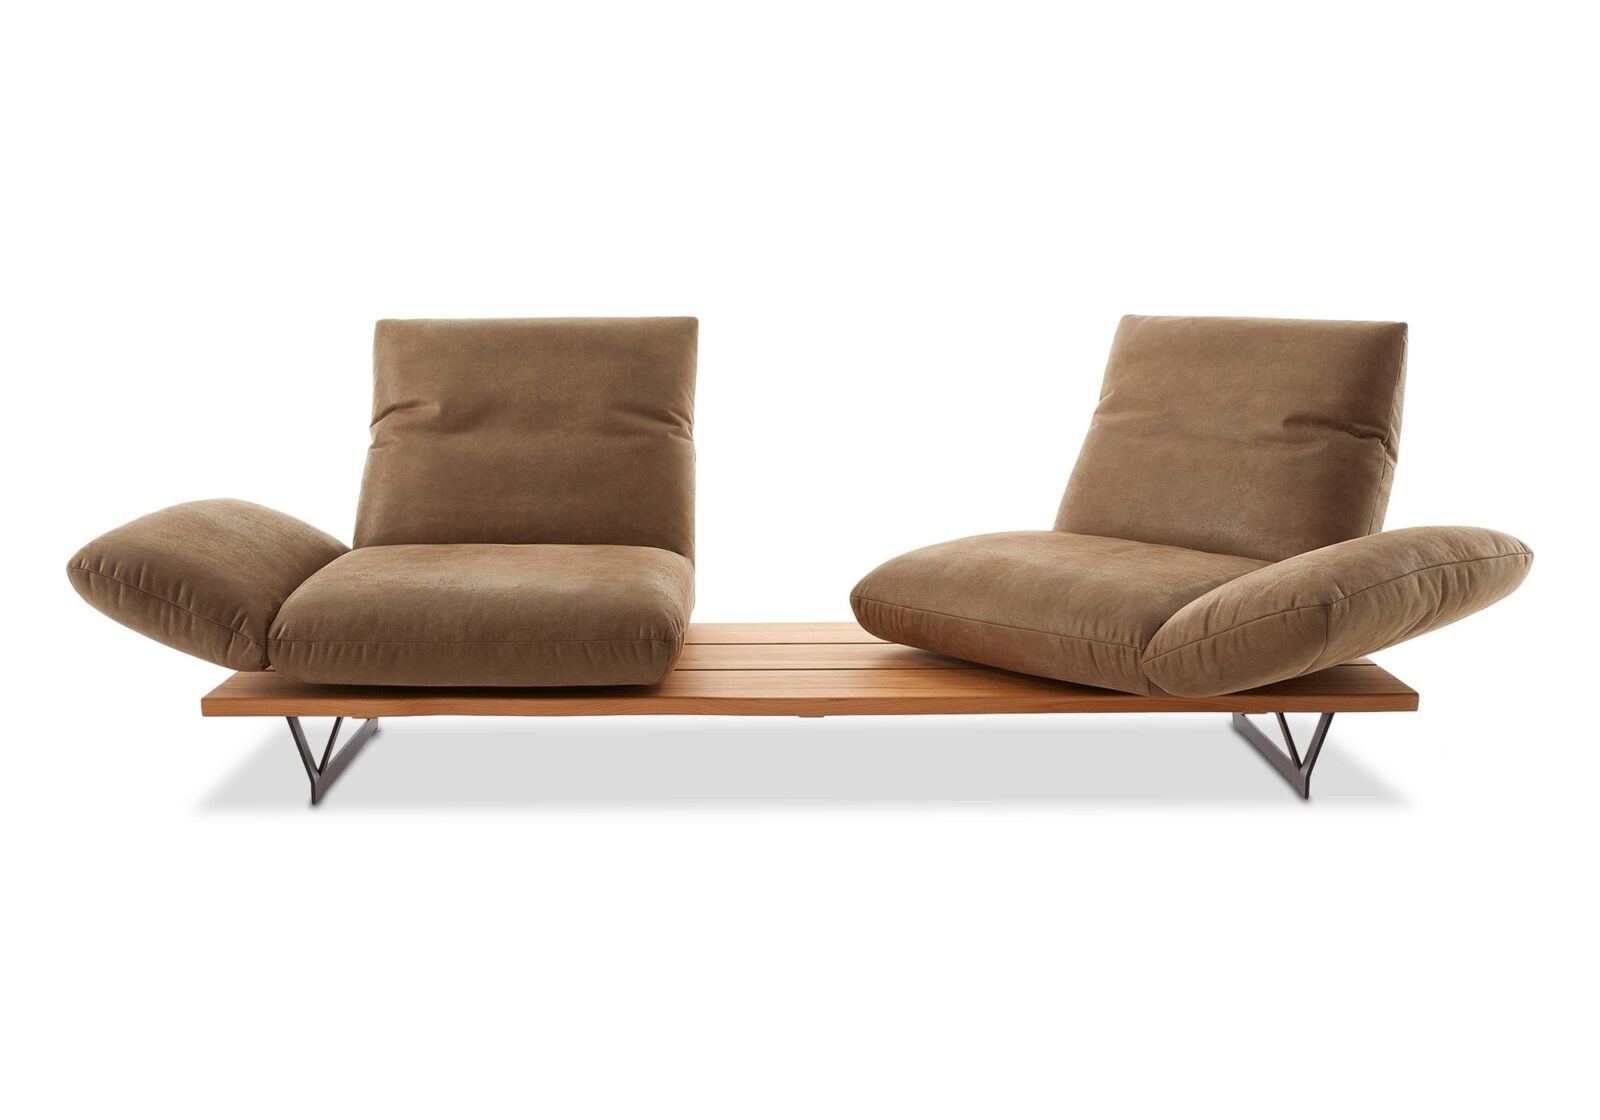 2.5er Funktionssofa Marilyn  drehbare Sitze. Bezug: Leder. Farbe: Braun. Erhältlich bei Möbel Gallati.